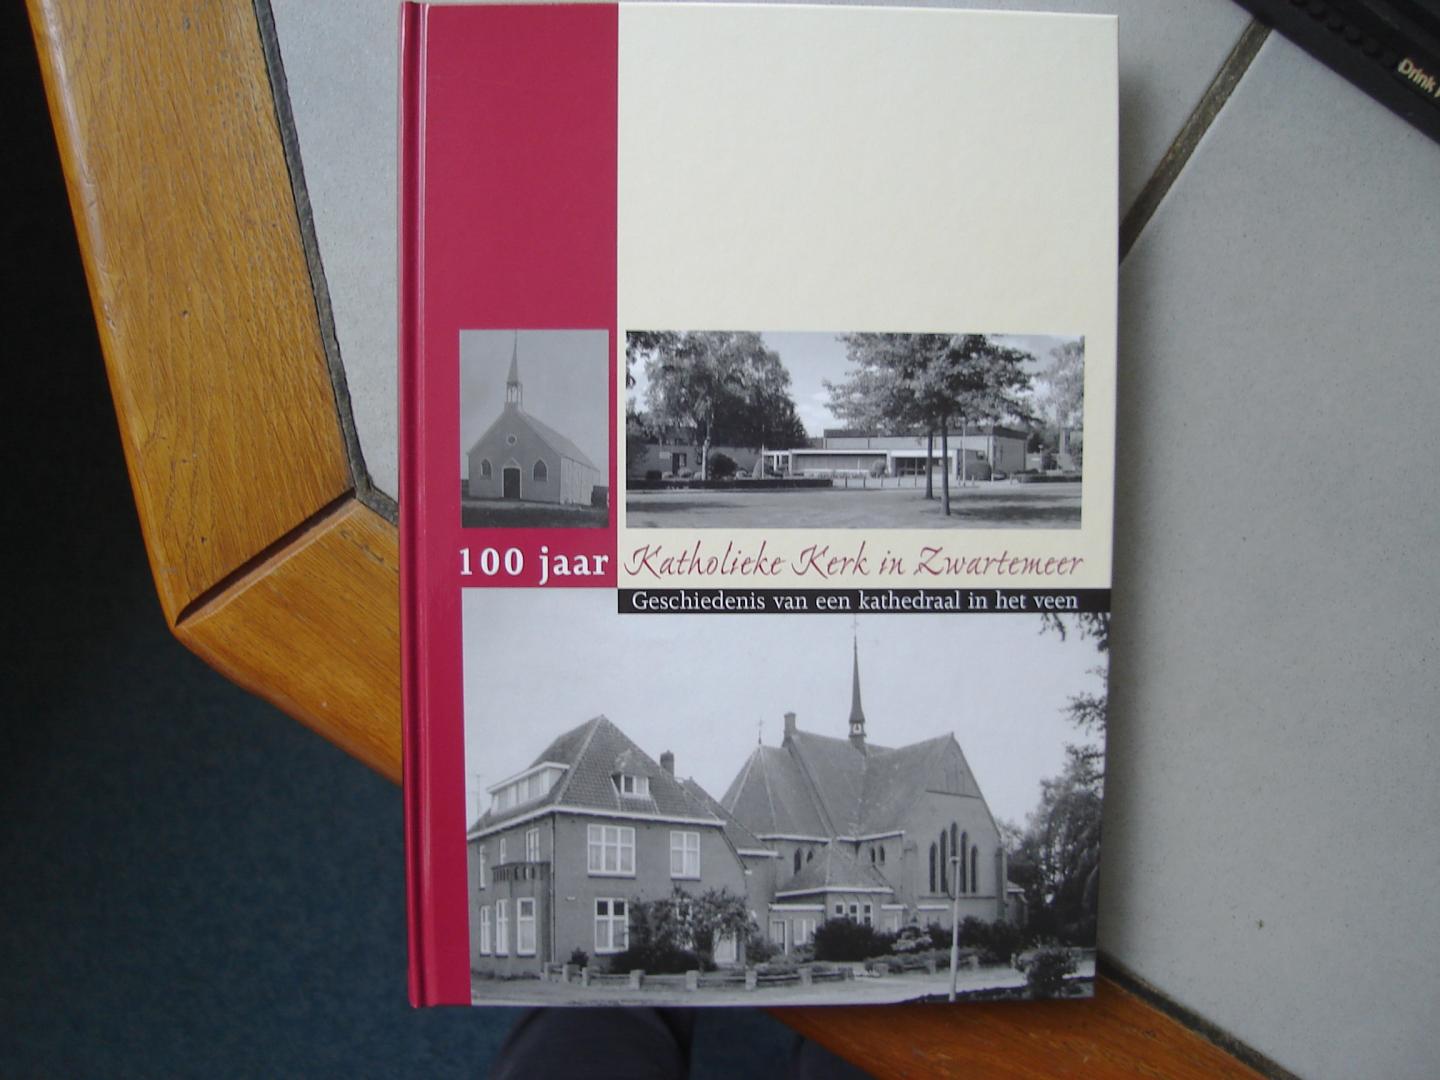 Henrie Wittendorp - Herman Gerth - Herman Lubbers jr en Herman Lubbers sr. - 100 jaar Katholieke kerk in Zwartemeer. Geschiedenis van een kathedraal in het veen.